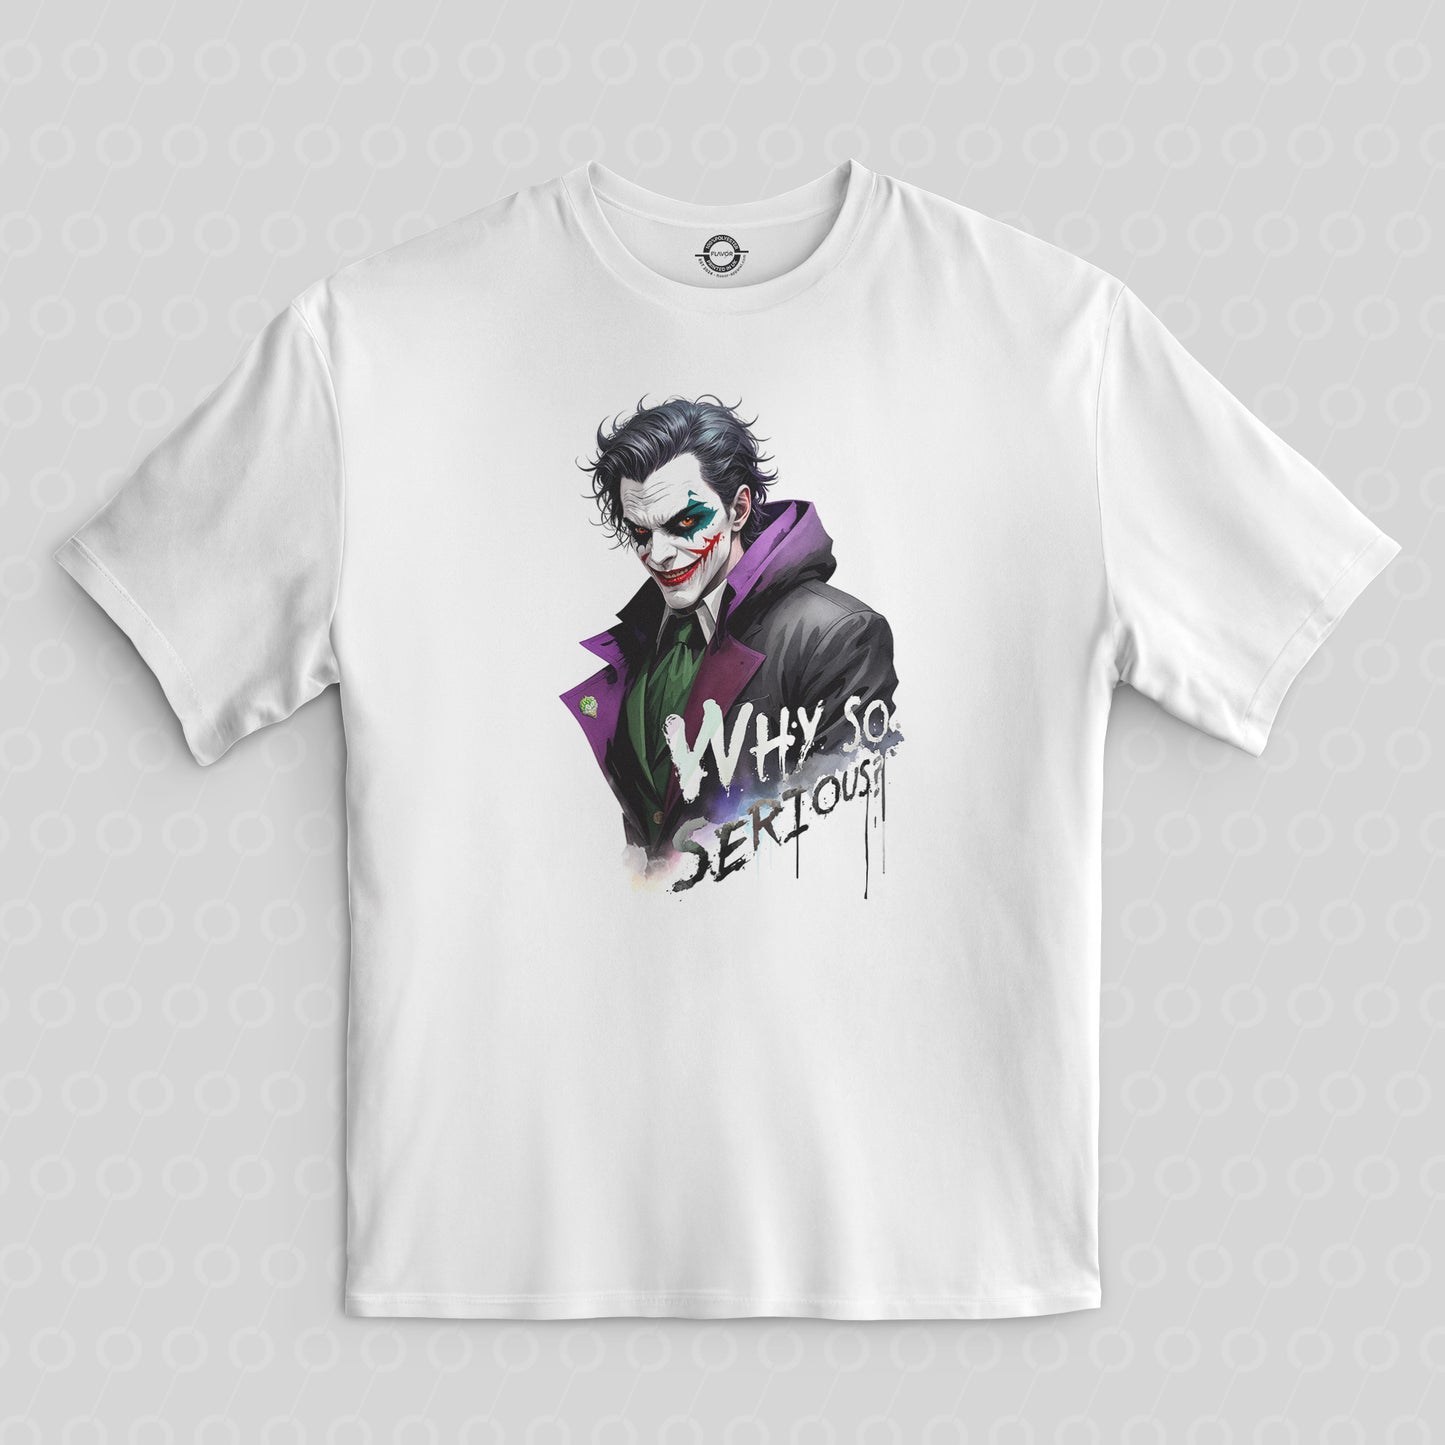 Joker Batman whysoserious serious Tshirt t-shirt t shirt